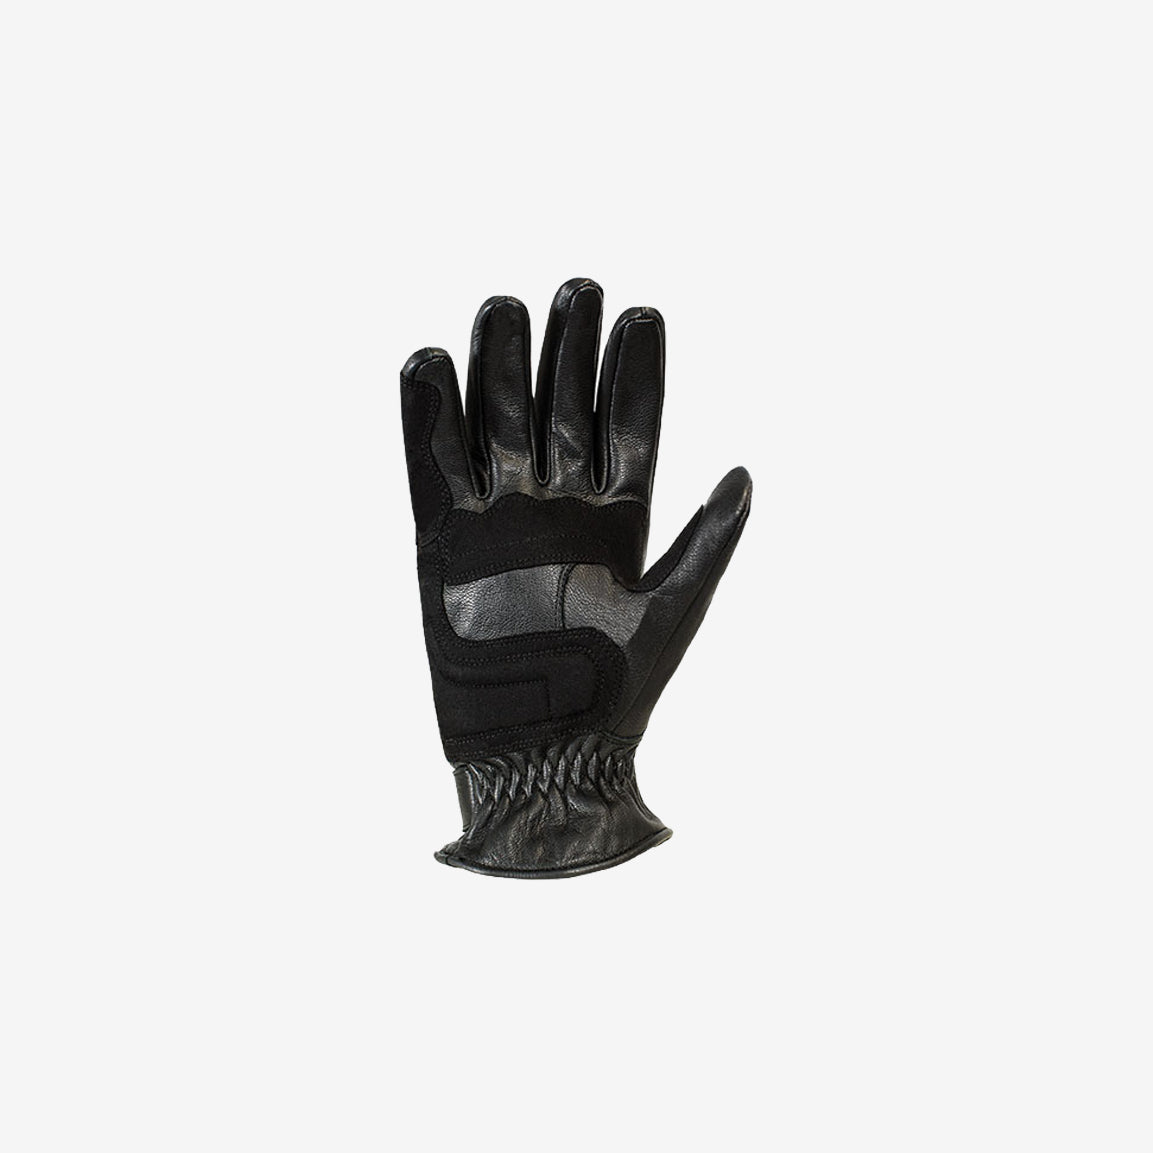 John Doe Tracker XTM Gloves - black. CE-zertifizierte und extrem solide Motorradhandschuhe aus schwarzem Leder mit raffinierten Details wie eine Touchscreen-Kompatibilität. Sehr hohe Sicherheit durch Knöchelschutz und Lederverstärkungen.